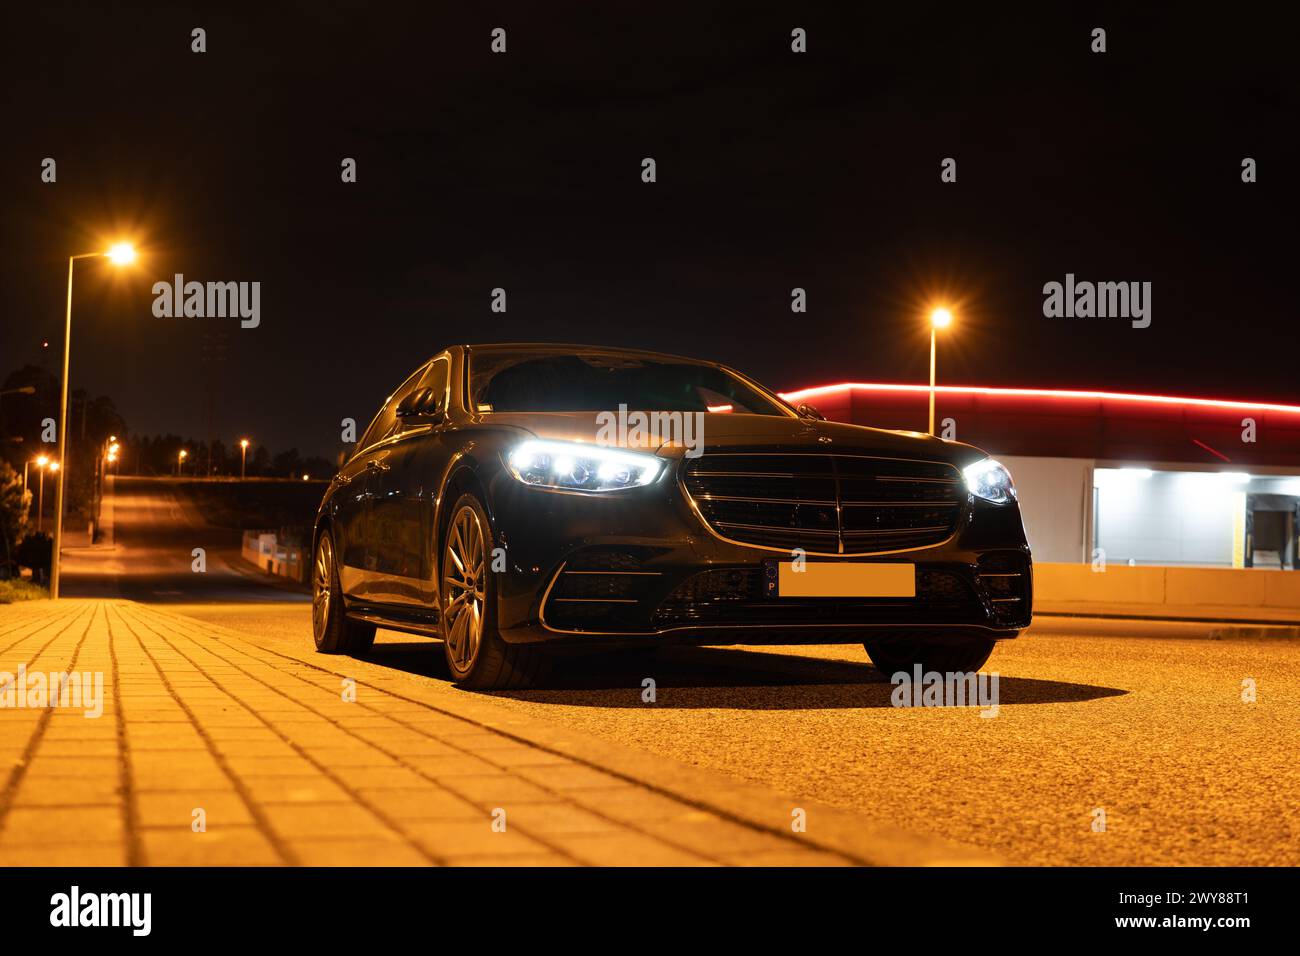 La Mercedes Benz la plus luxueuse, rencontrez Mercedes Benz classe S. Banque D'Images